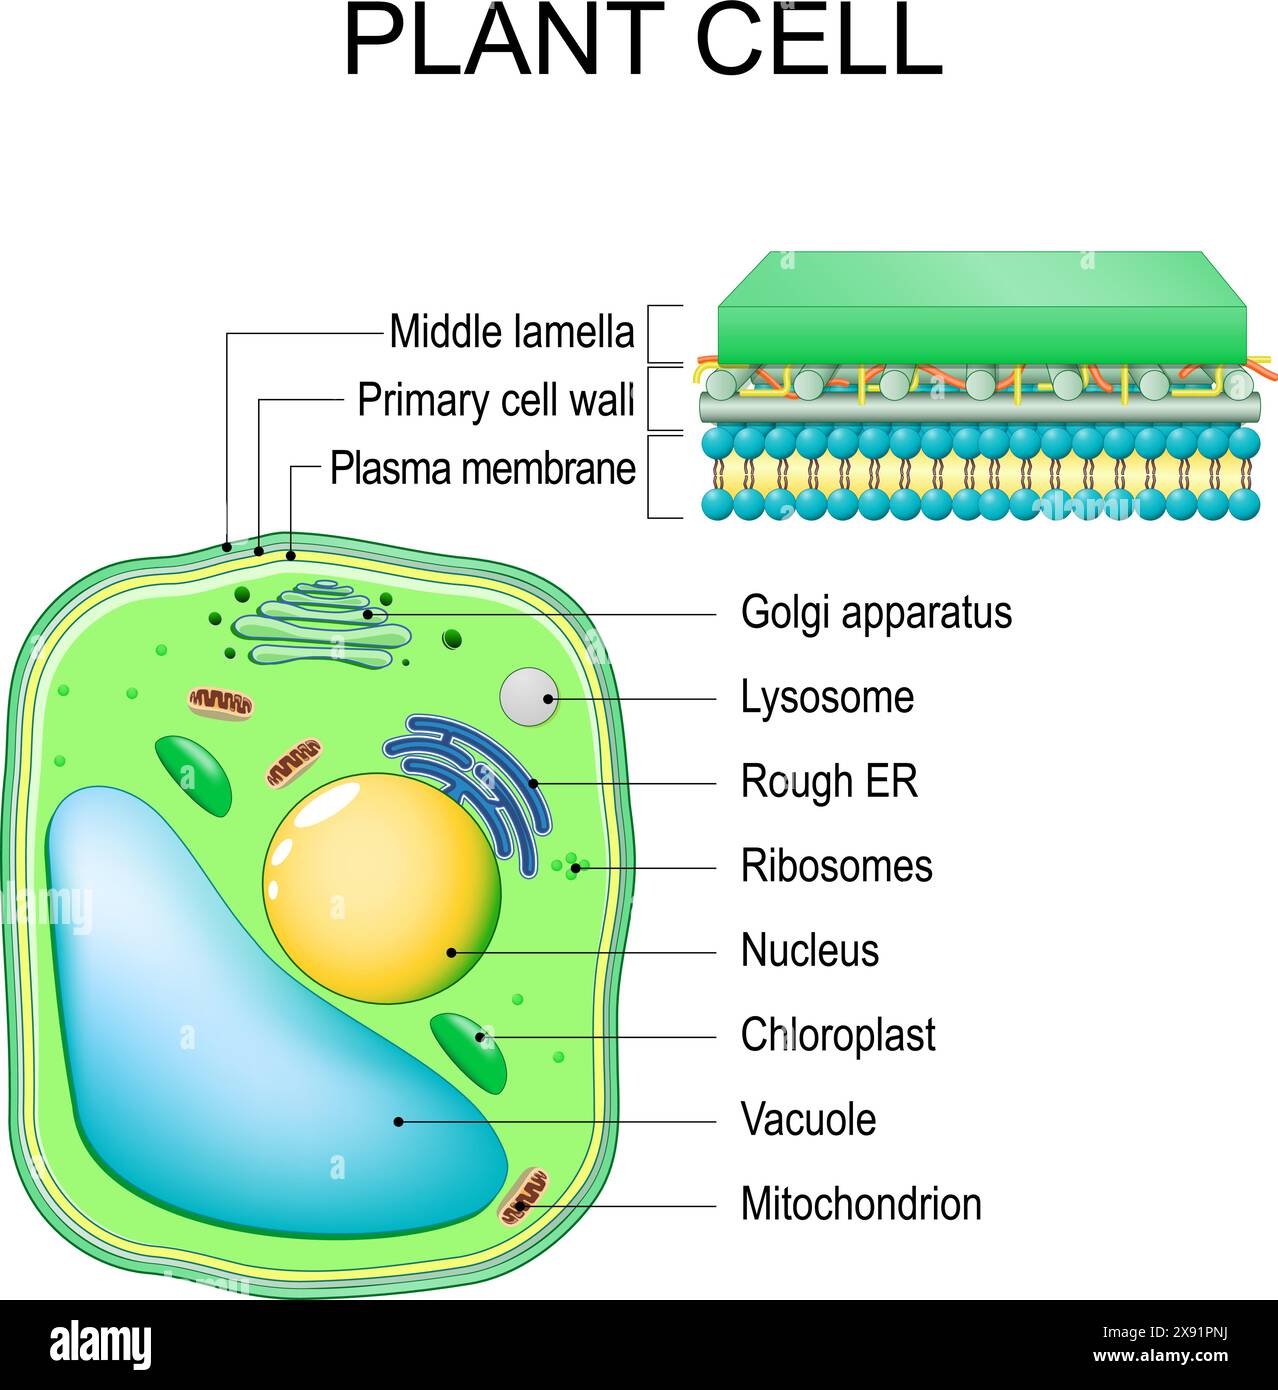 Cellule végétale. Structure et anatomie. Gros plan des couches d'une paroi cellulaire. Illustration vectorielle Illustration de Vecteur